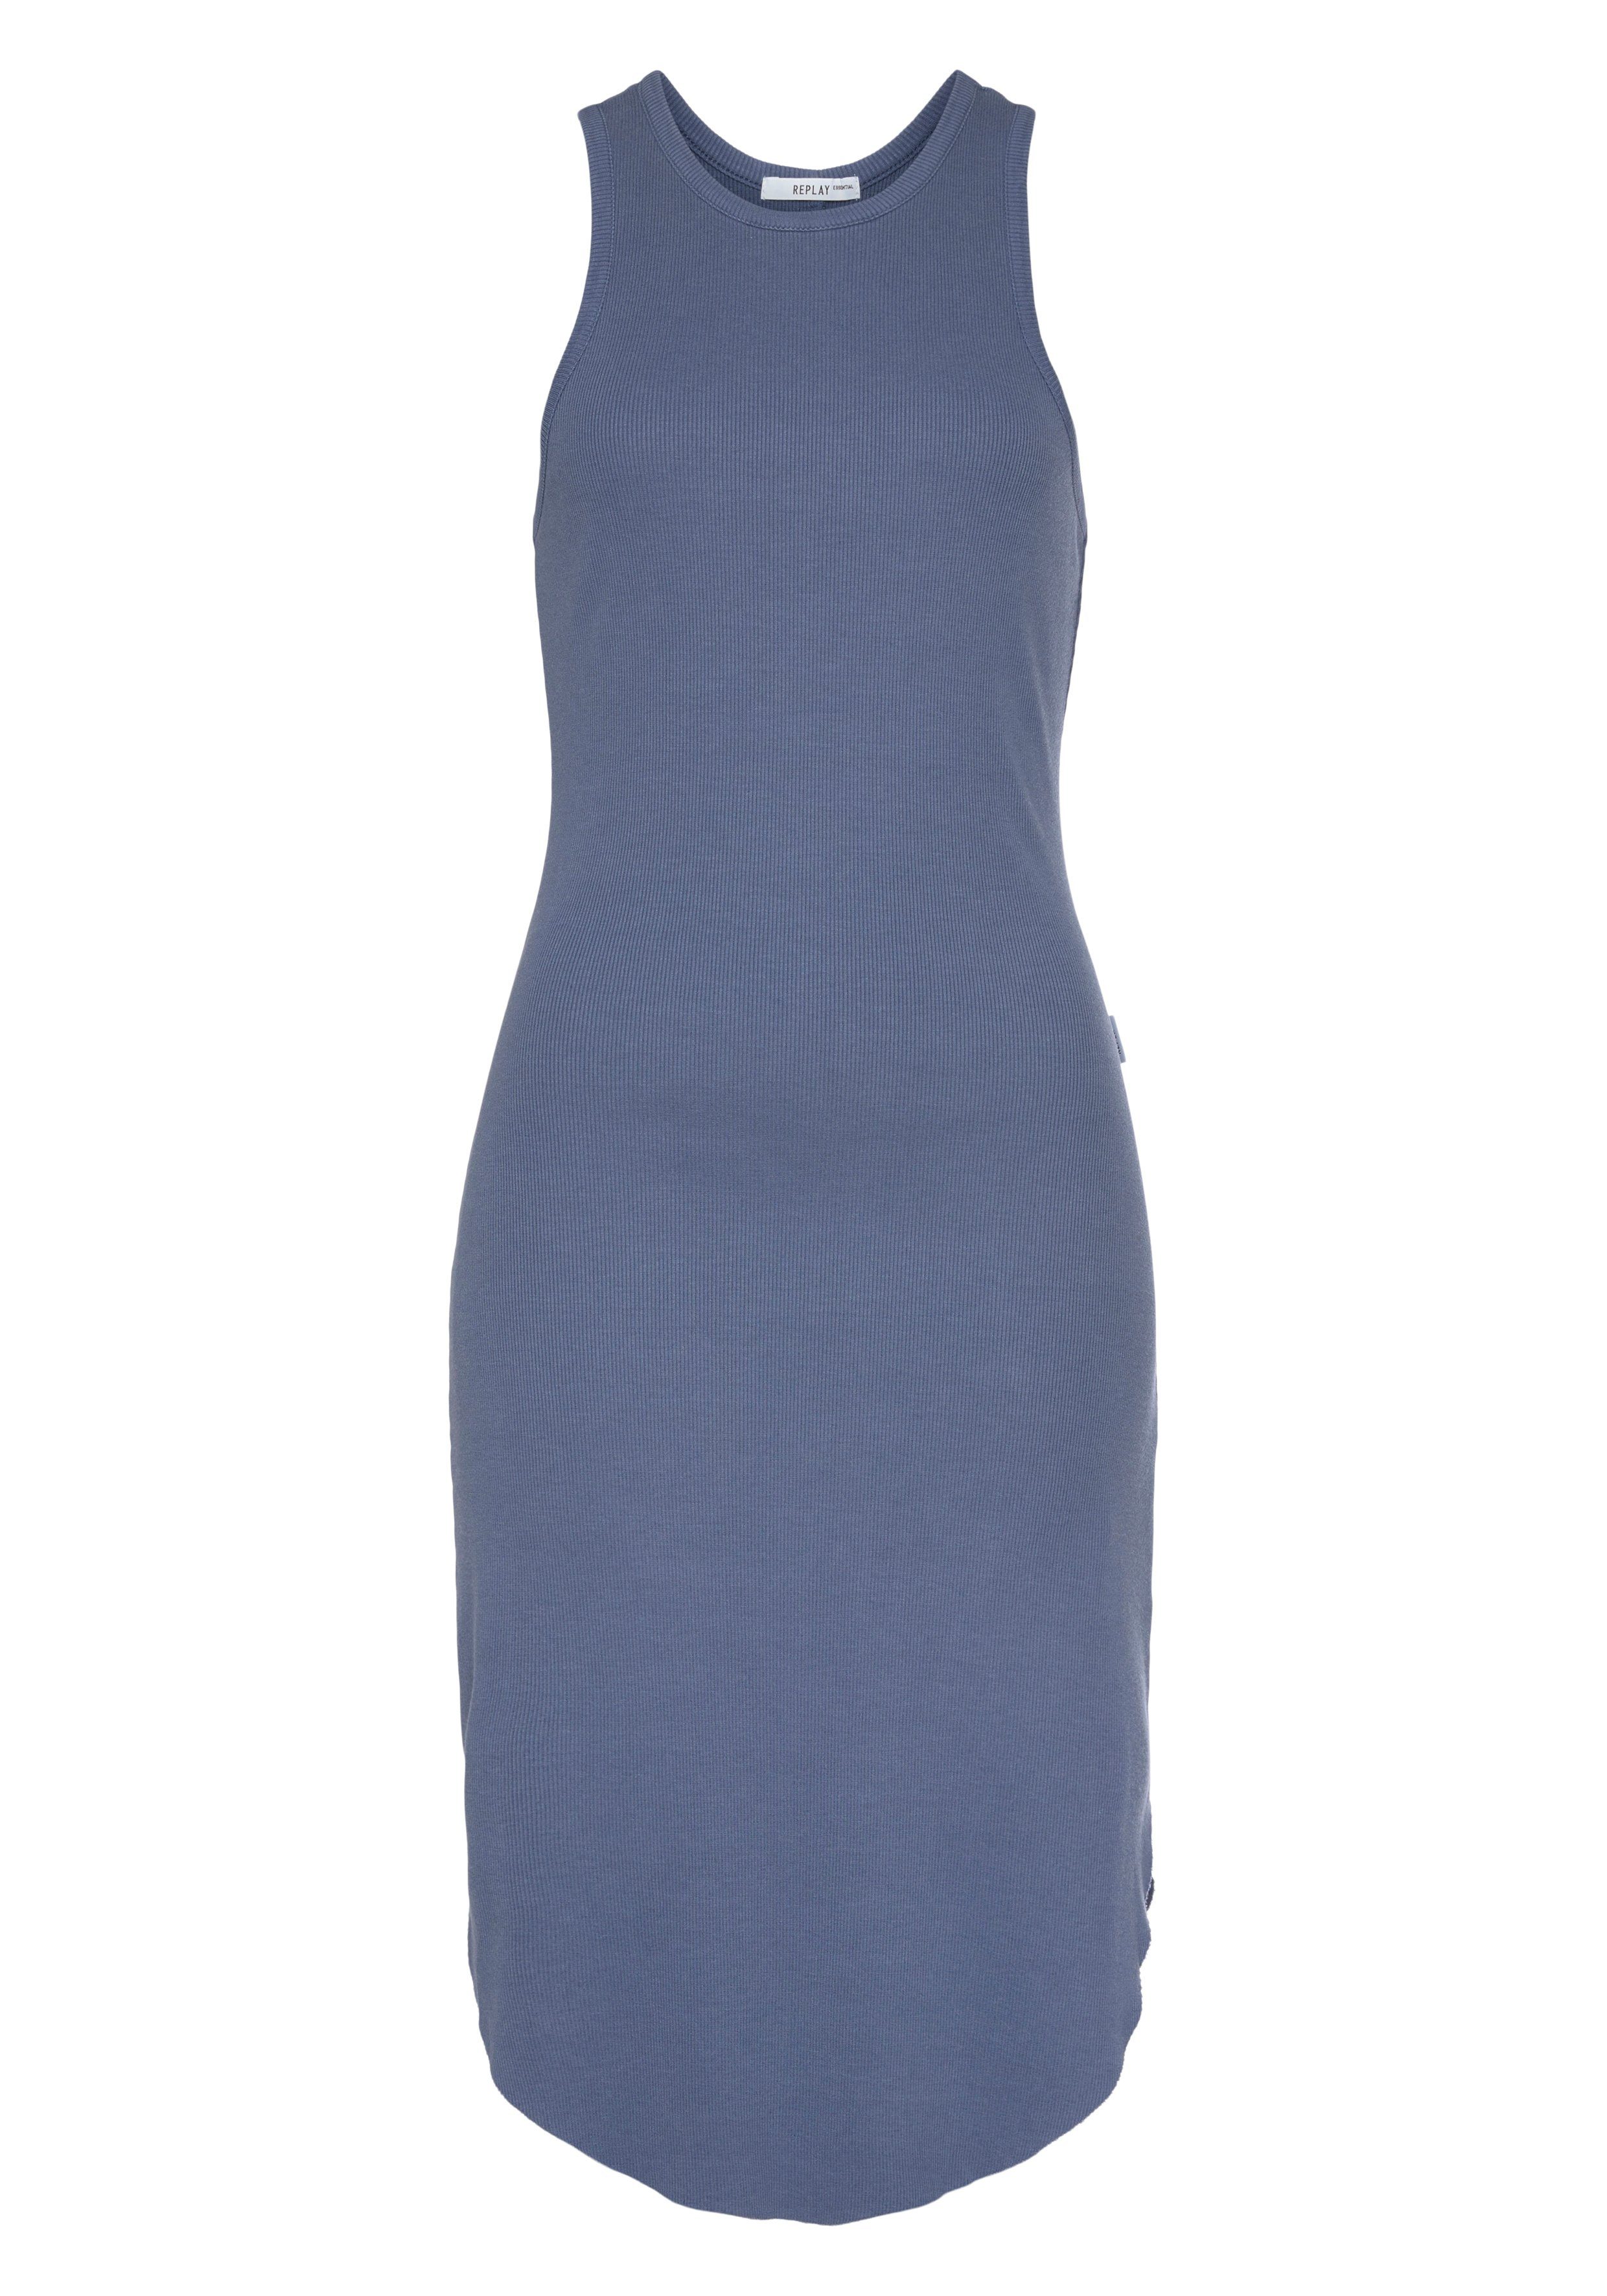 Replay Sommerkleid mit Elasthan Stretchqualität blue